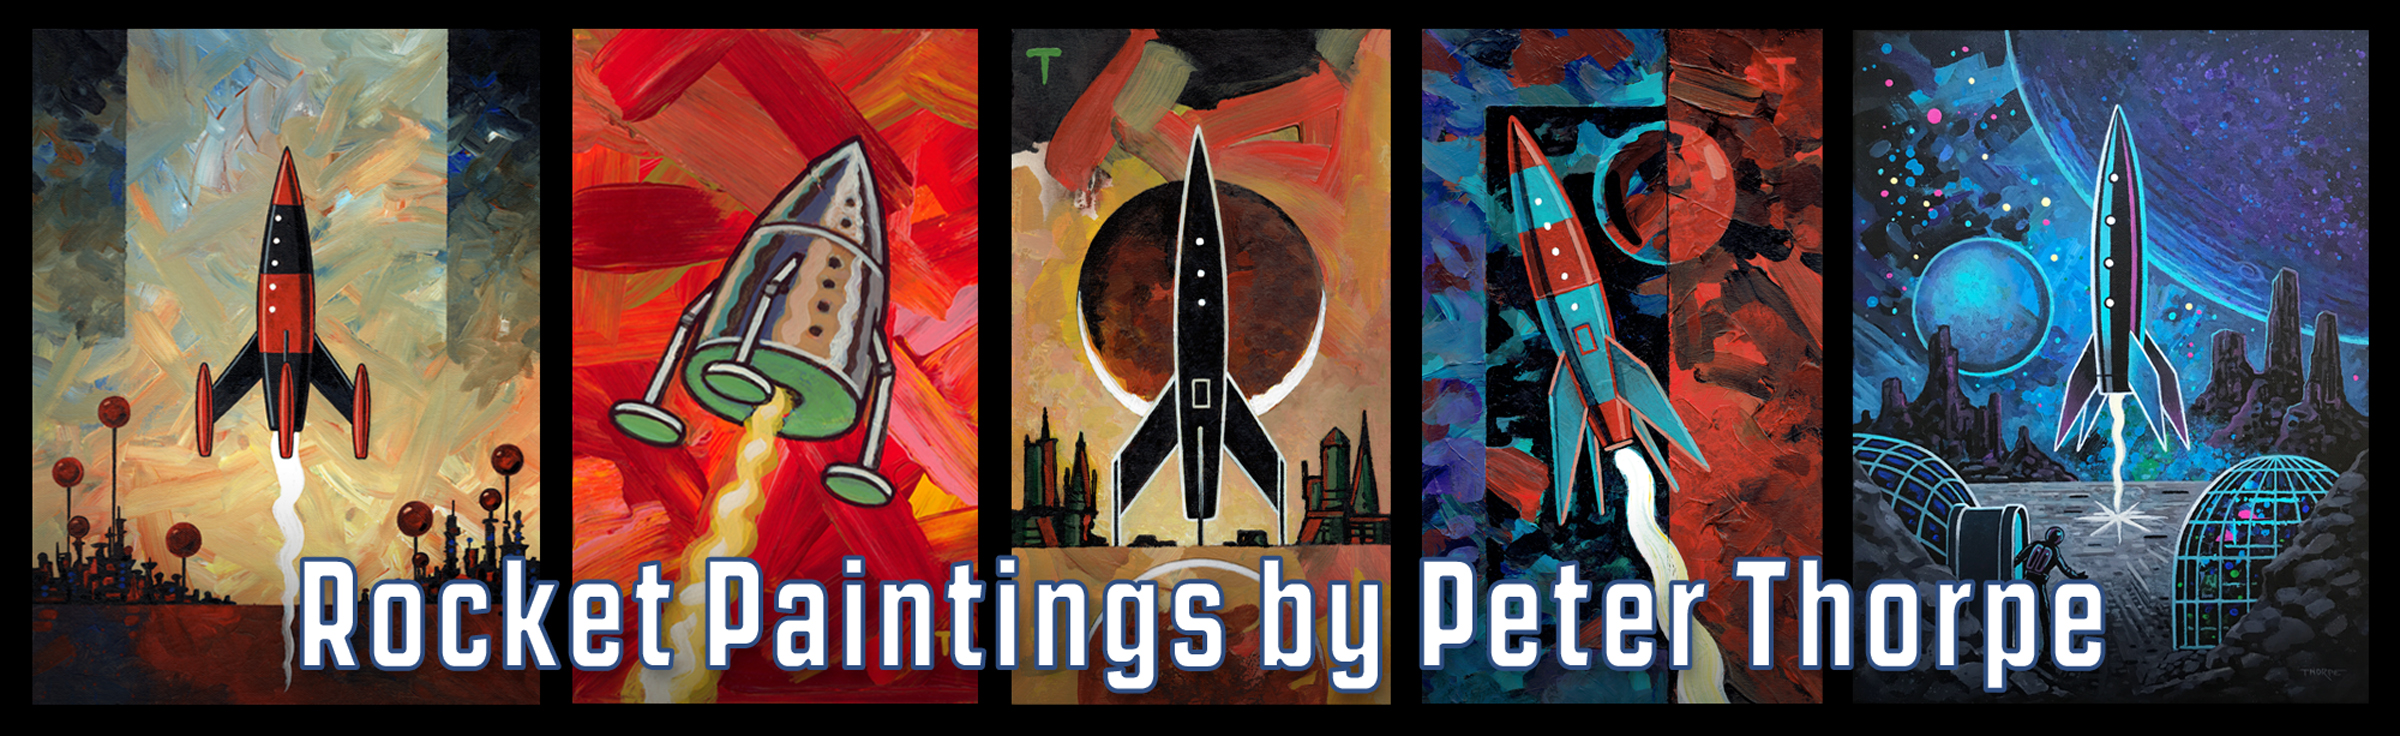 Rocket Paintings by Peter Thorpe